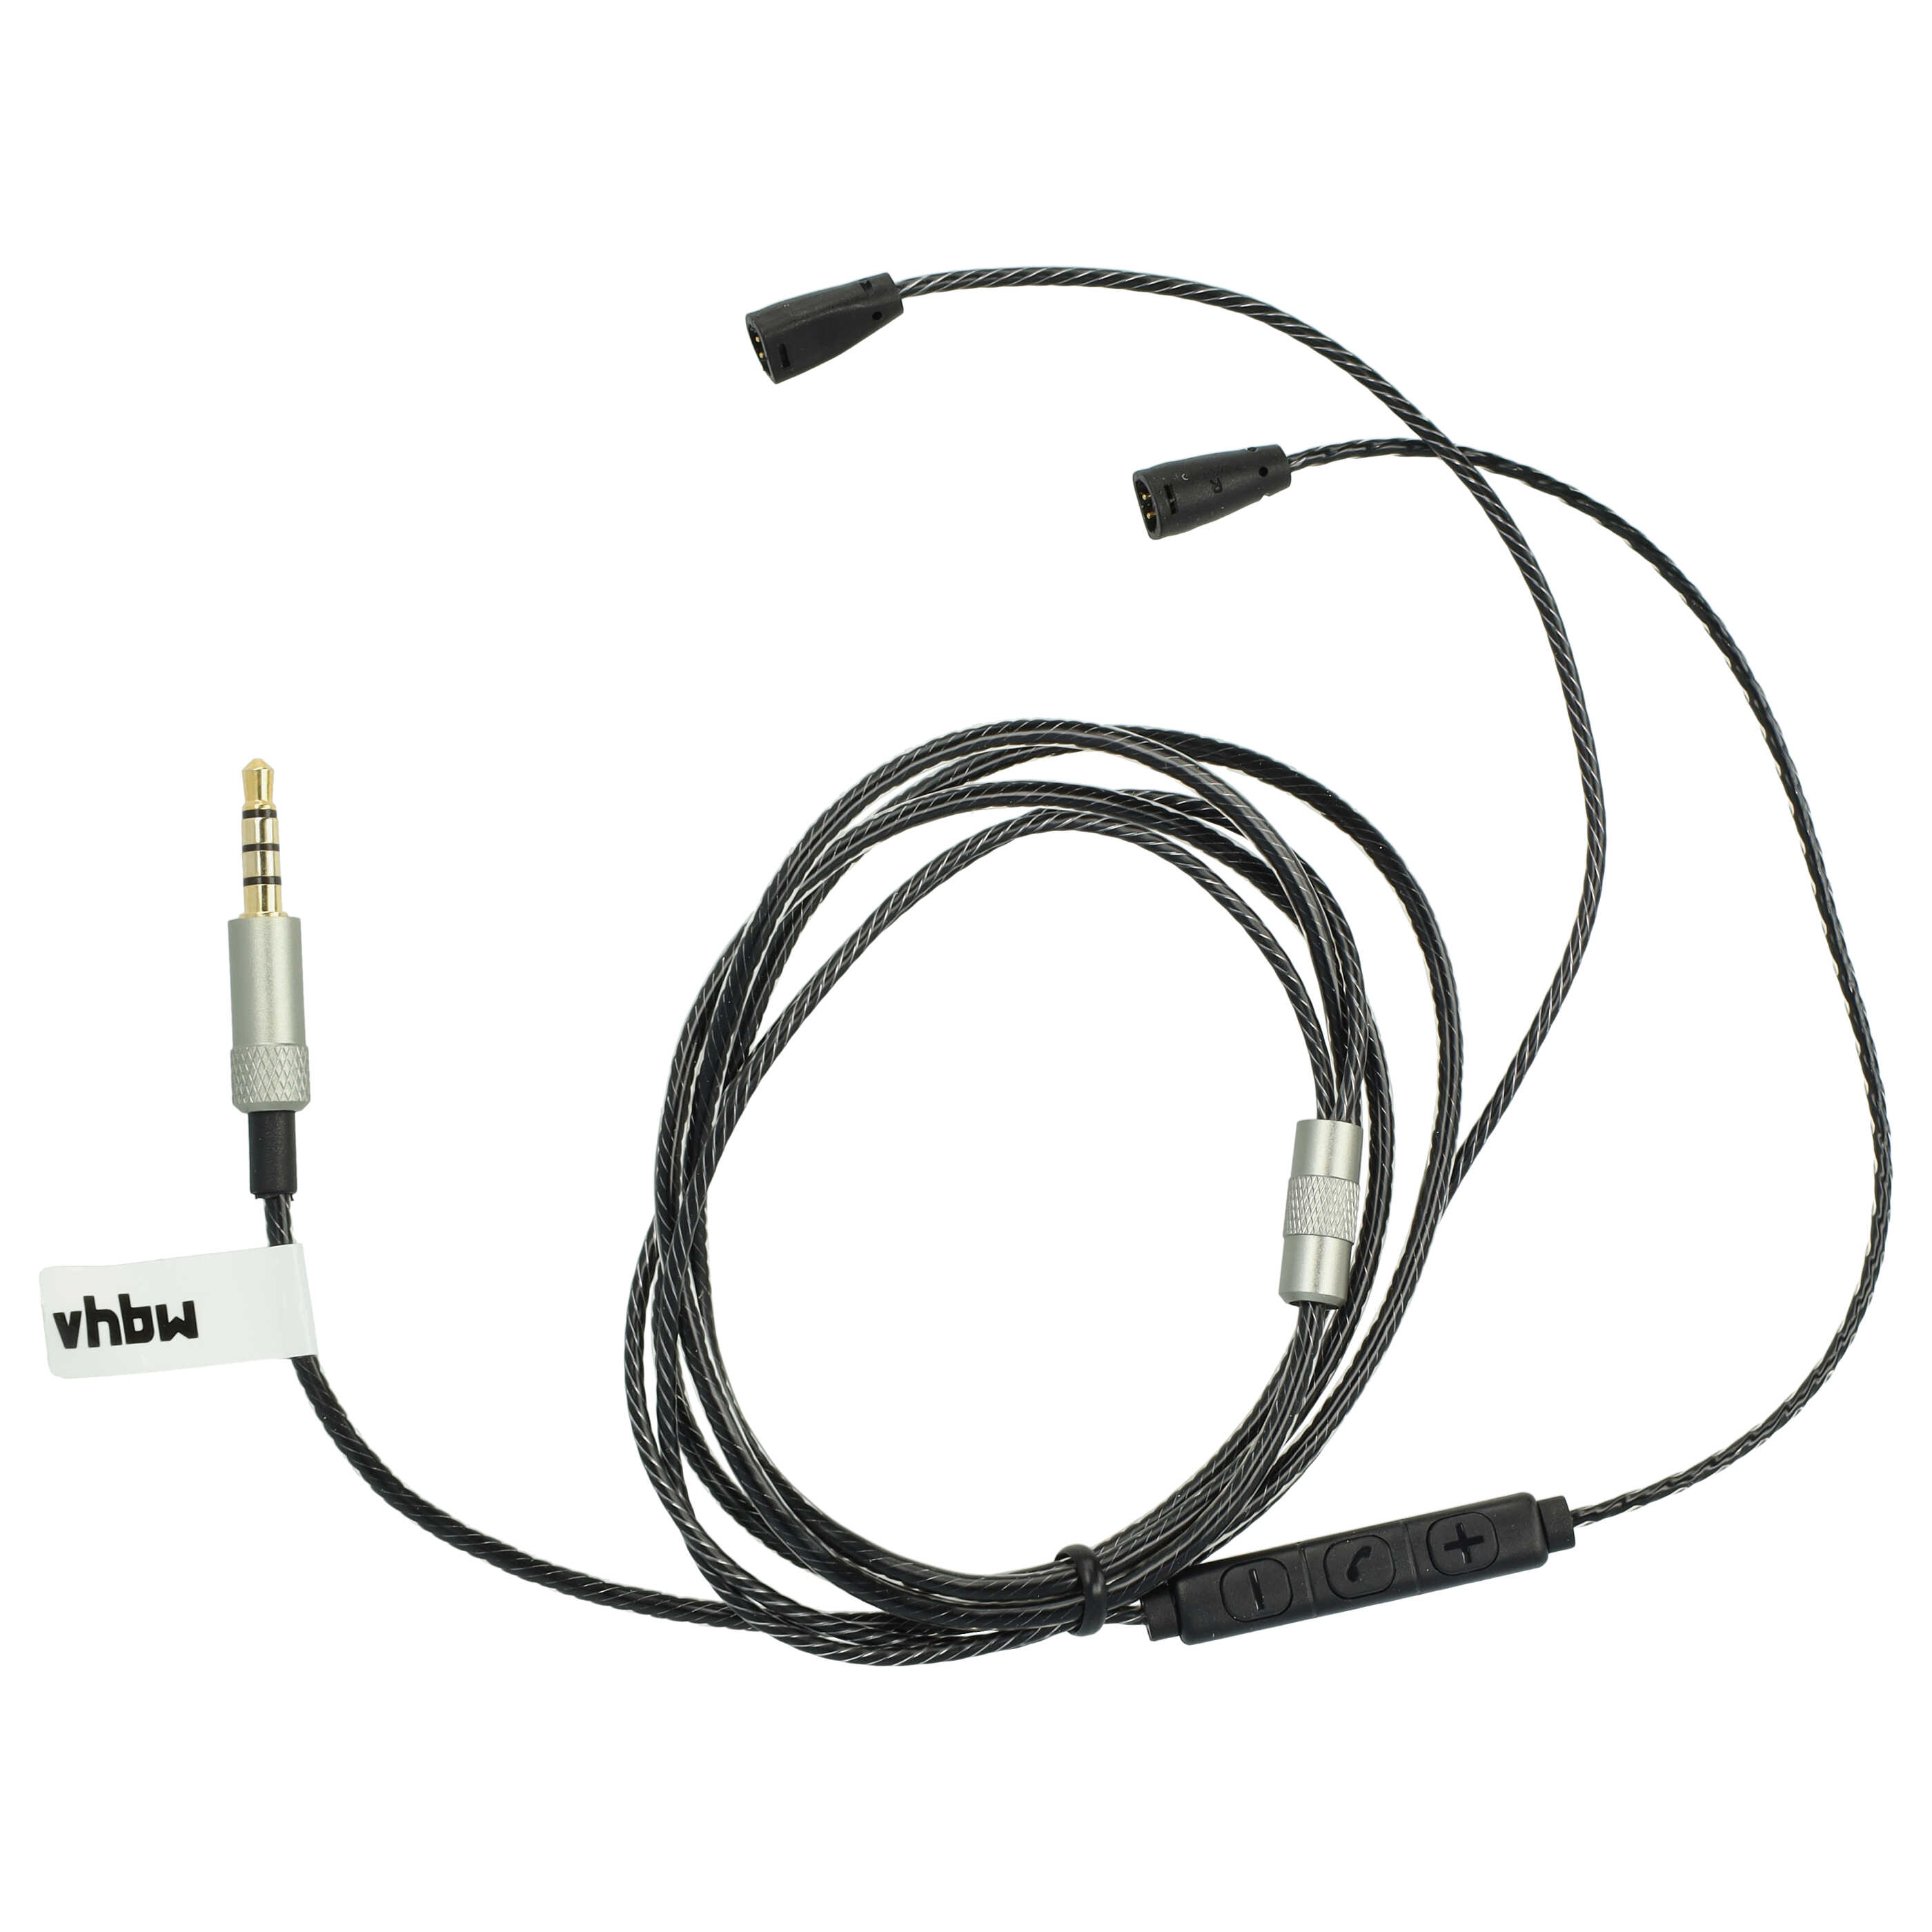 Kabel do słuchawek Sennheiser IE8, IE80 - czarny, 120 cm